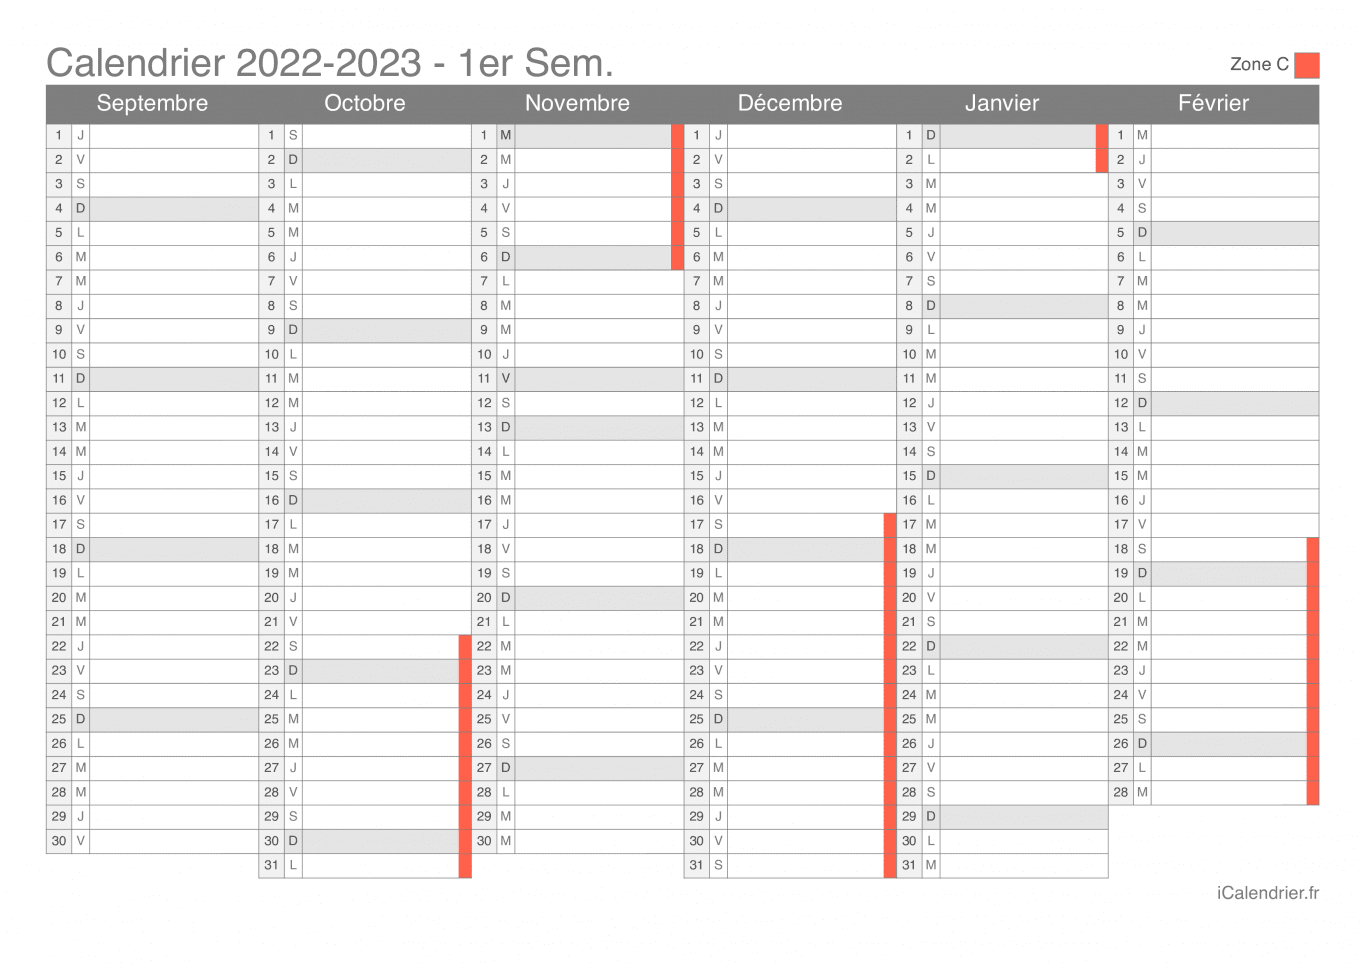 Calendrier des vacances scolaires 2022-2023 par semestre de la zone C